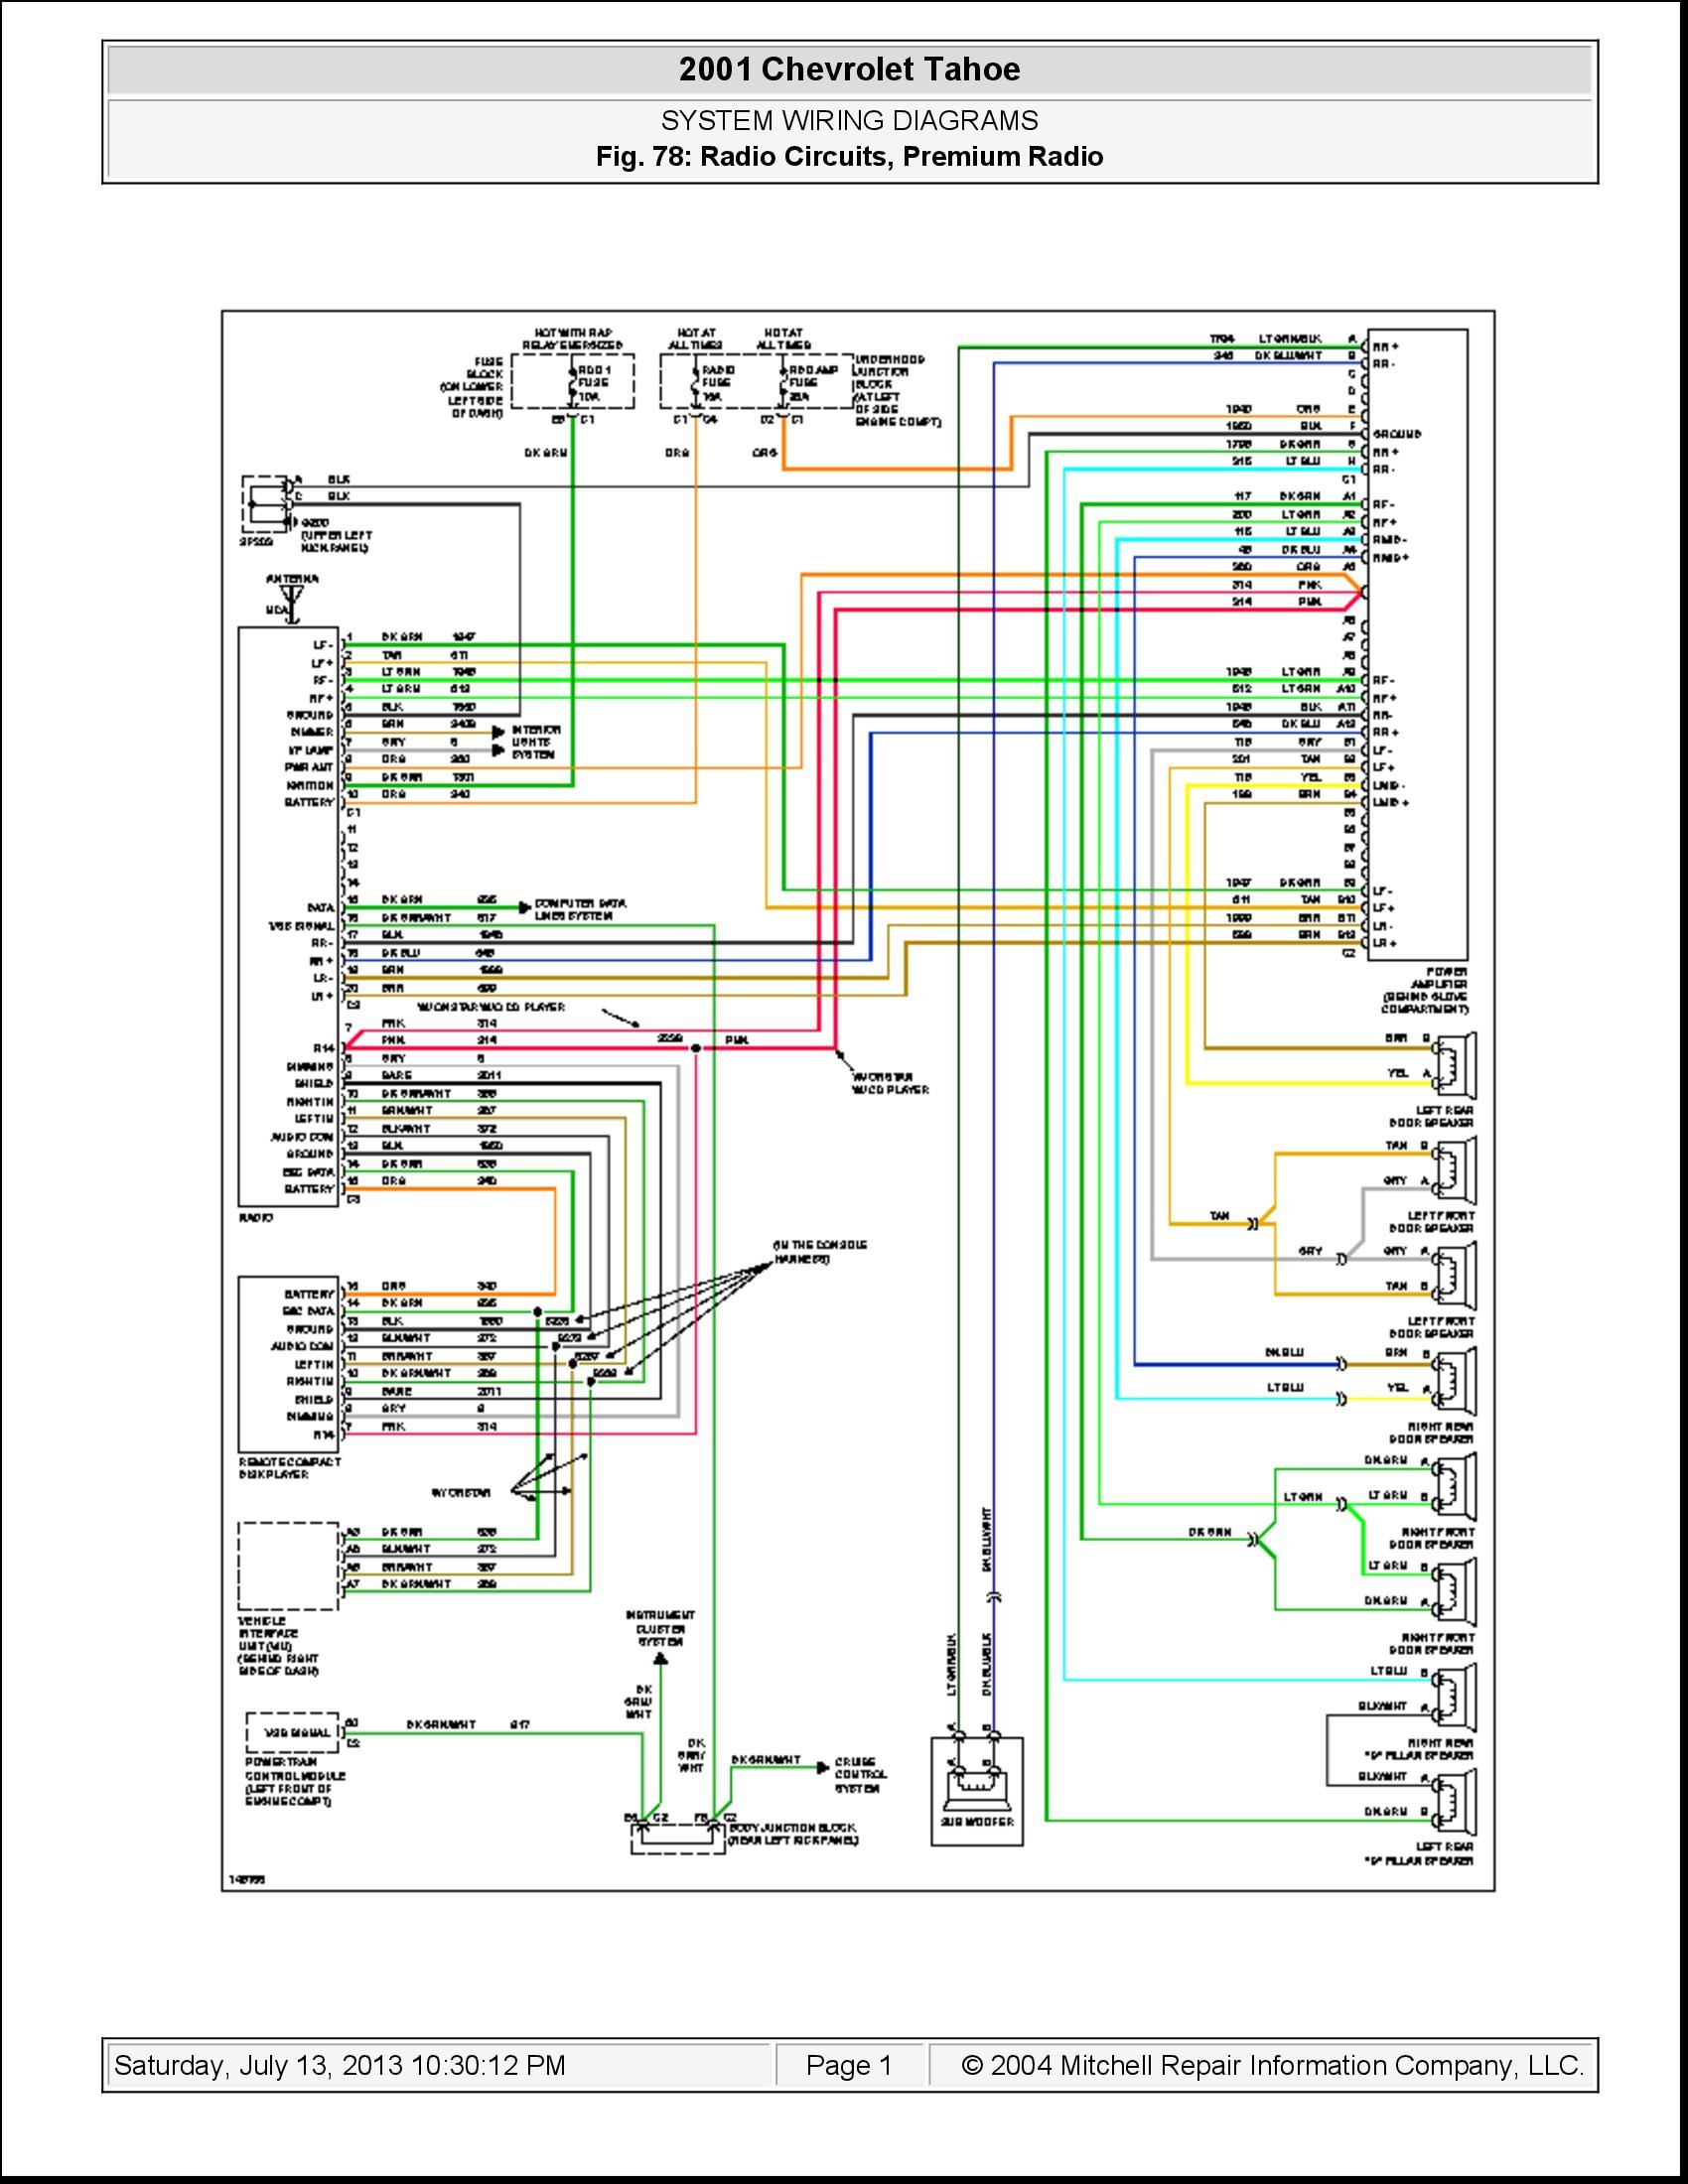 Engine Compartment Diagram 2014 Tahoe Wiring Diagram Another Blog About Wiring Diagram • Of Engine Compartment Diagram